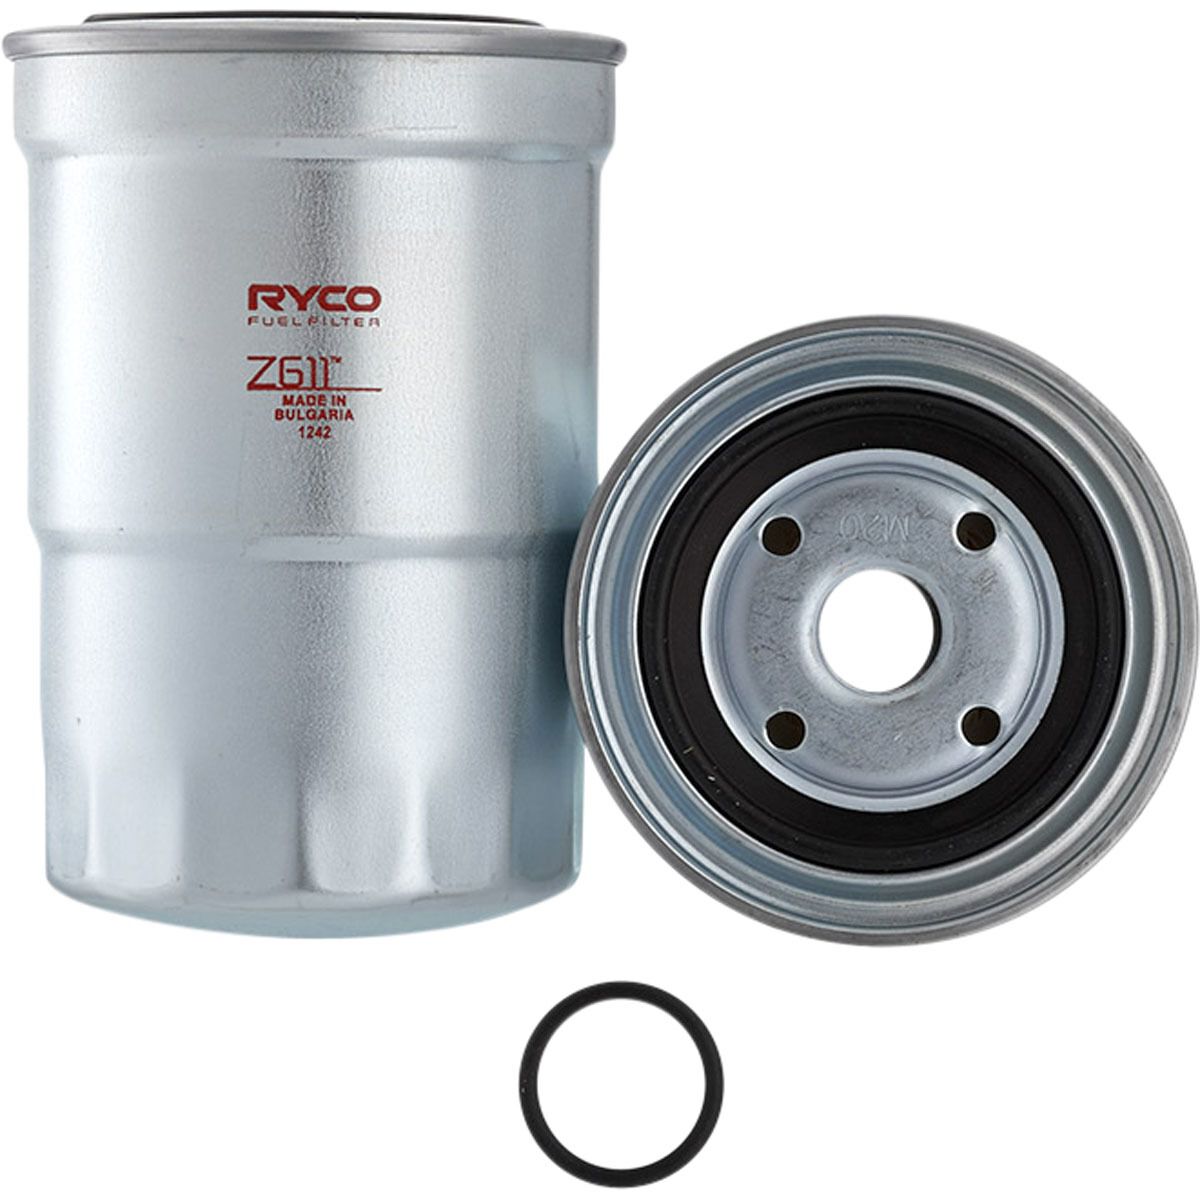 Ryco Fuel Filter - Z611, , scaau_hi-res